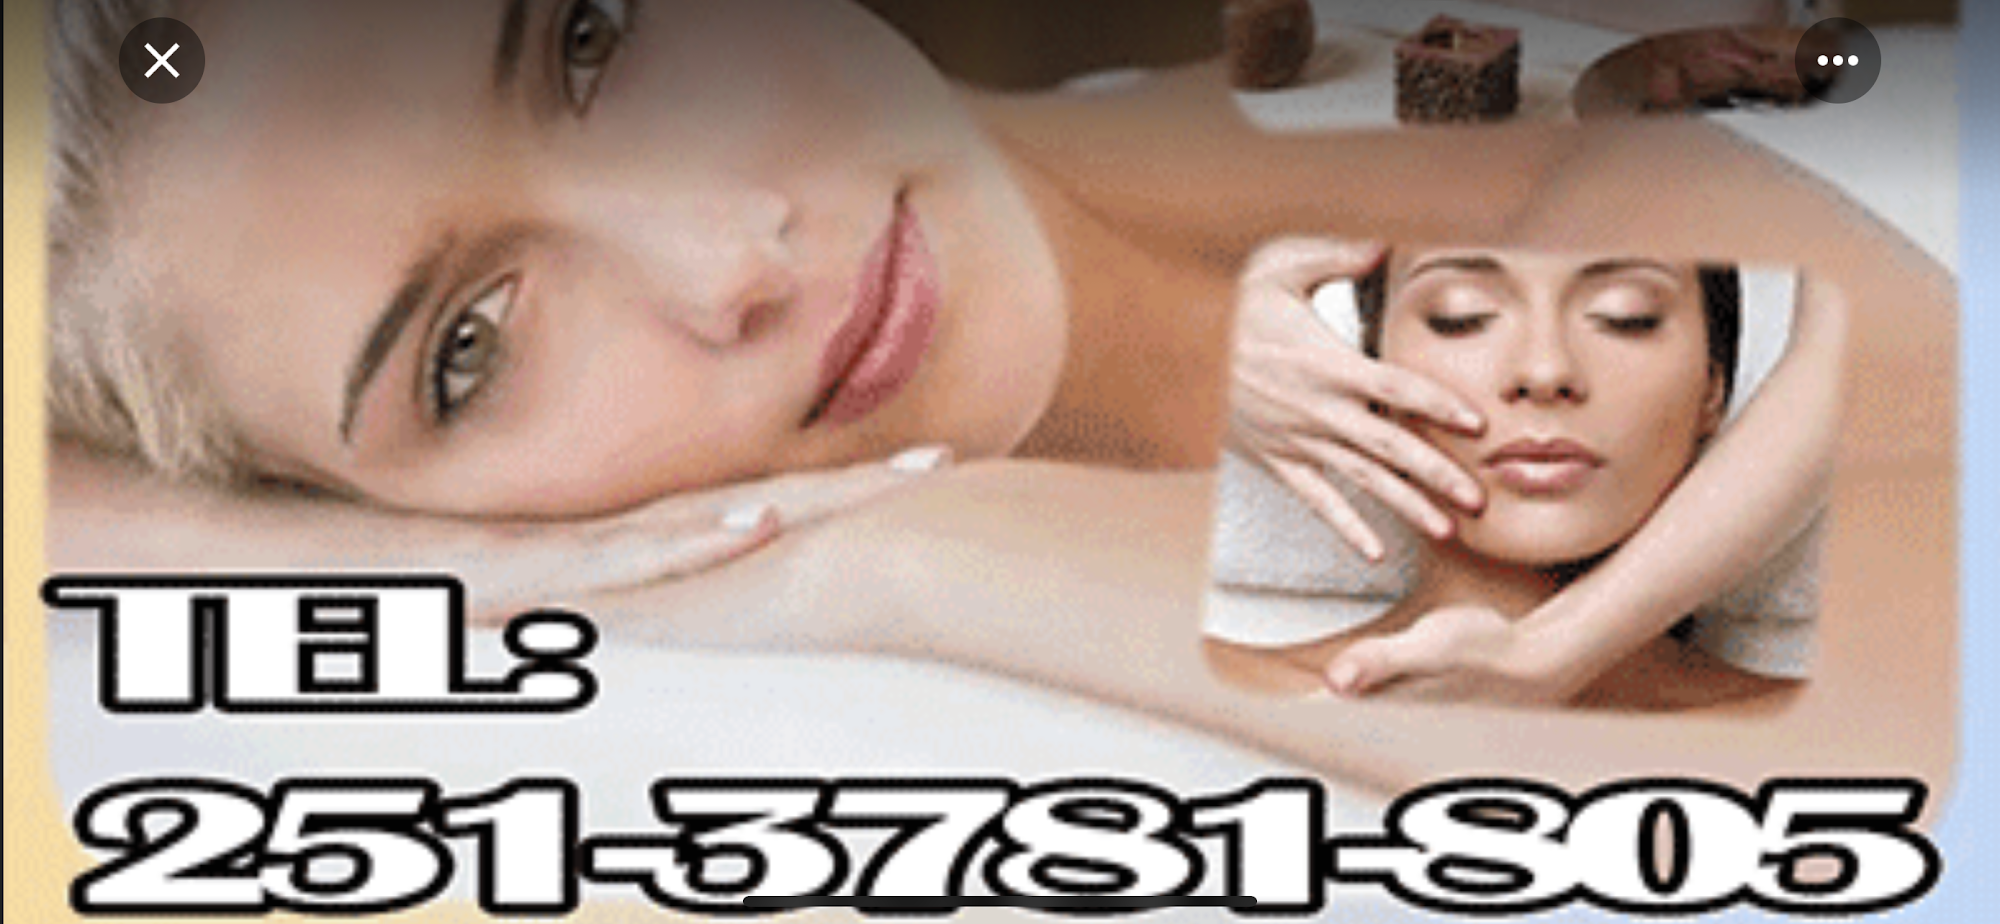 Sunlight massage 4276 McCrary Rd d, Semmes Alabama 36575